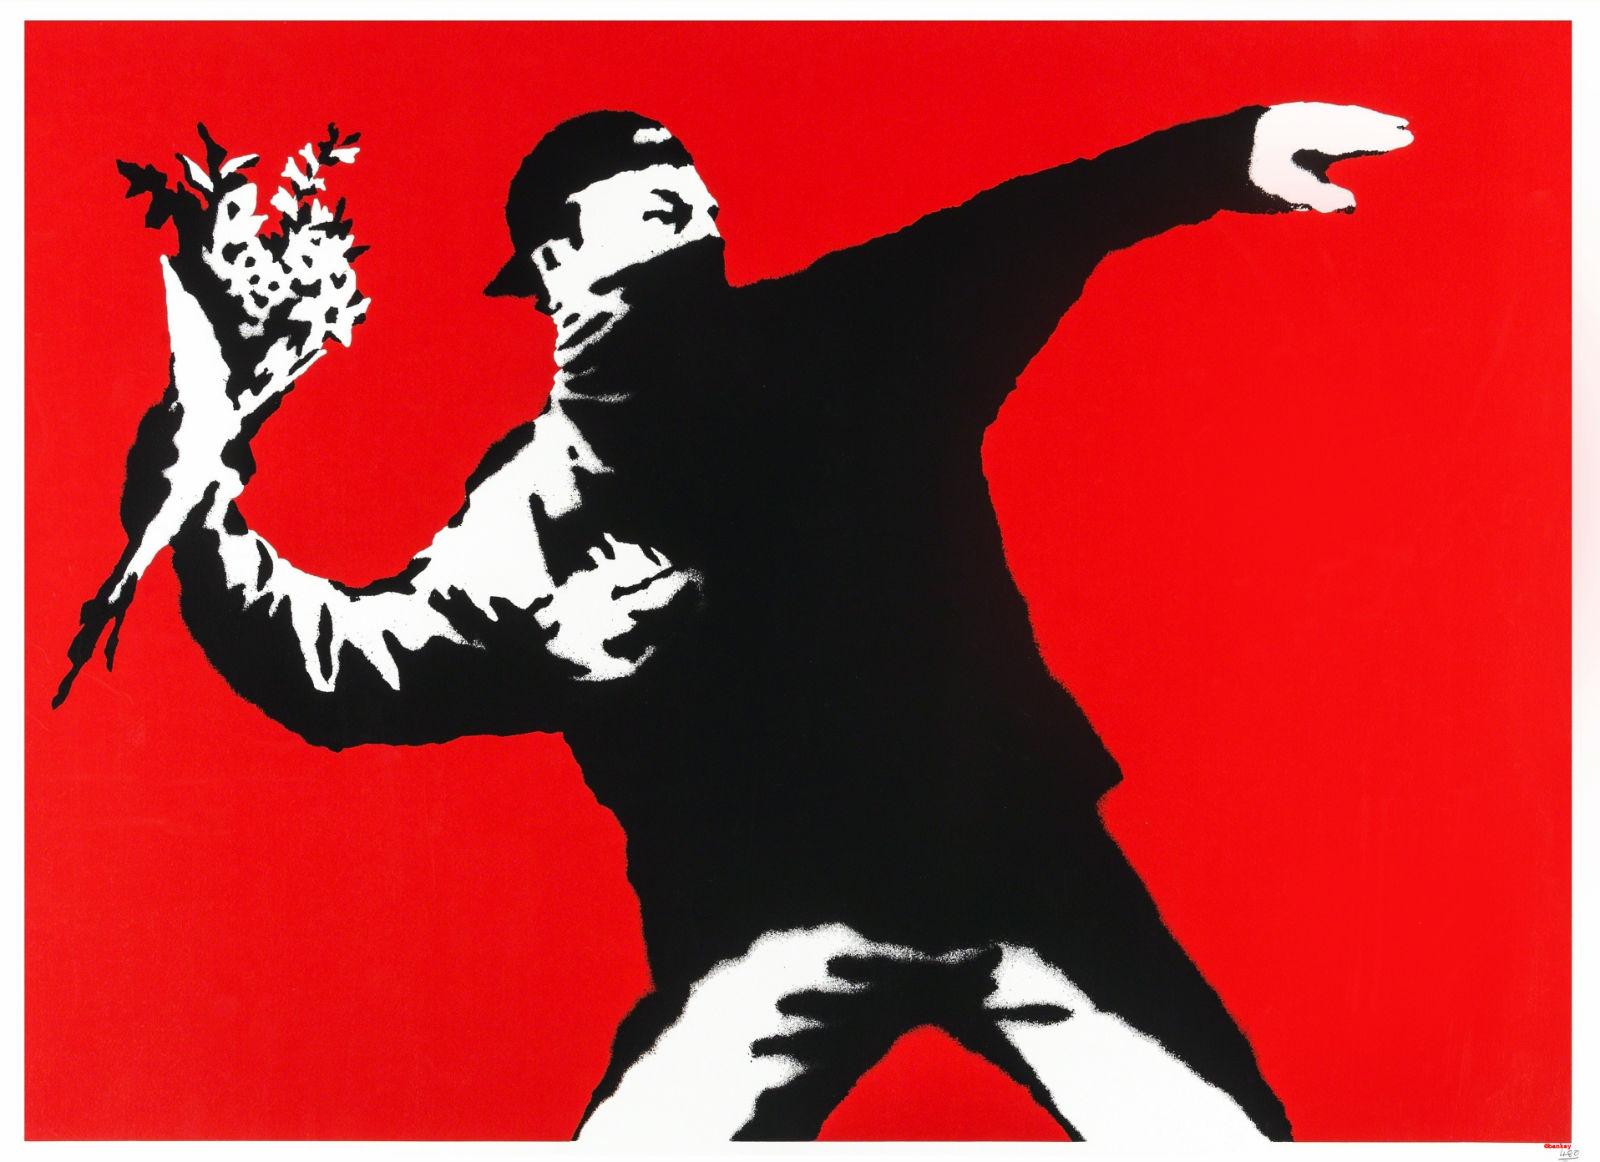 The Art of Banksy. A visual protest. In mostra al Mudec di Milano lo street artist più discusso del mondo